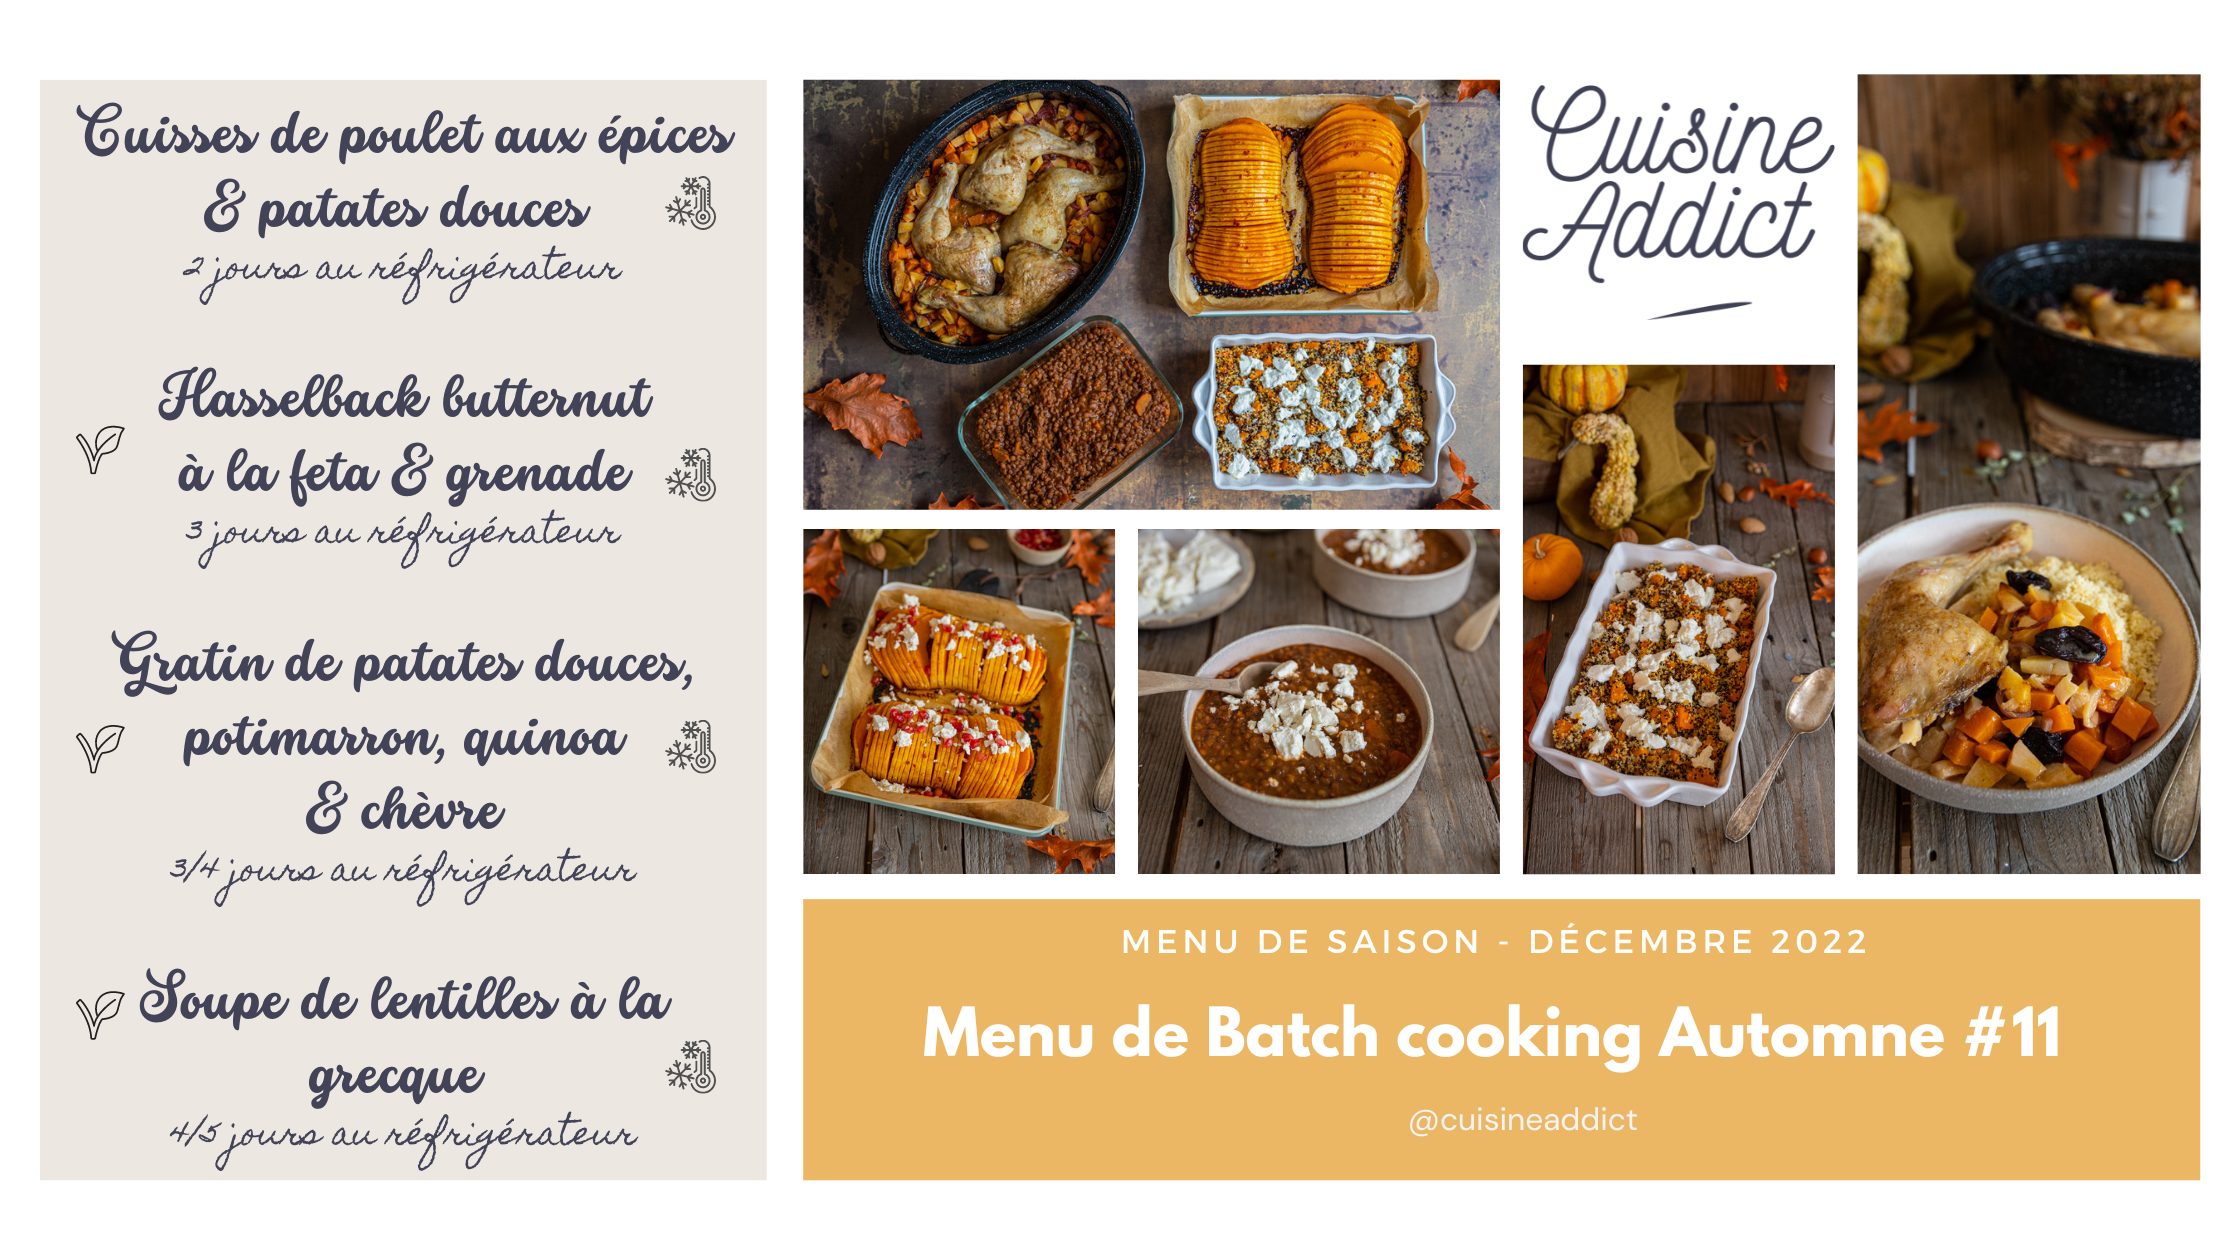 Batch cooking Printemps #2 ter – Mois d'Avril 2022 – Semaine 14 - Cuisine  Addict